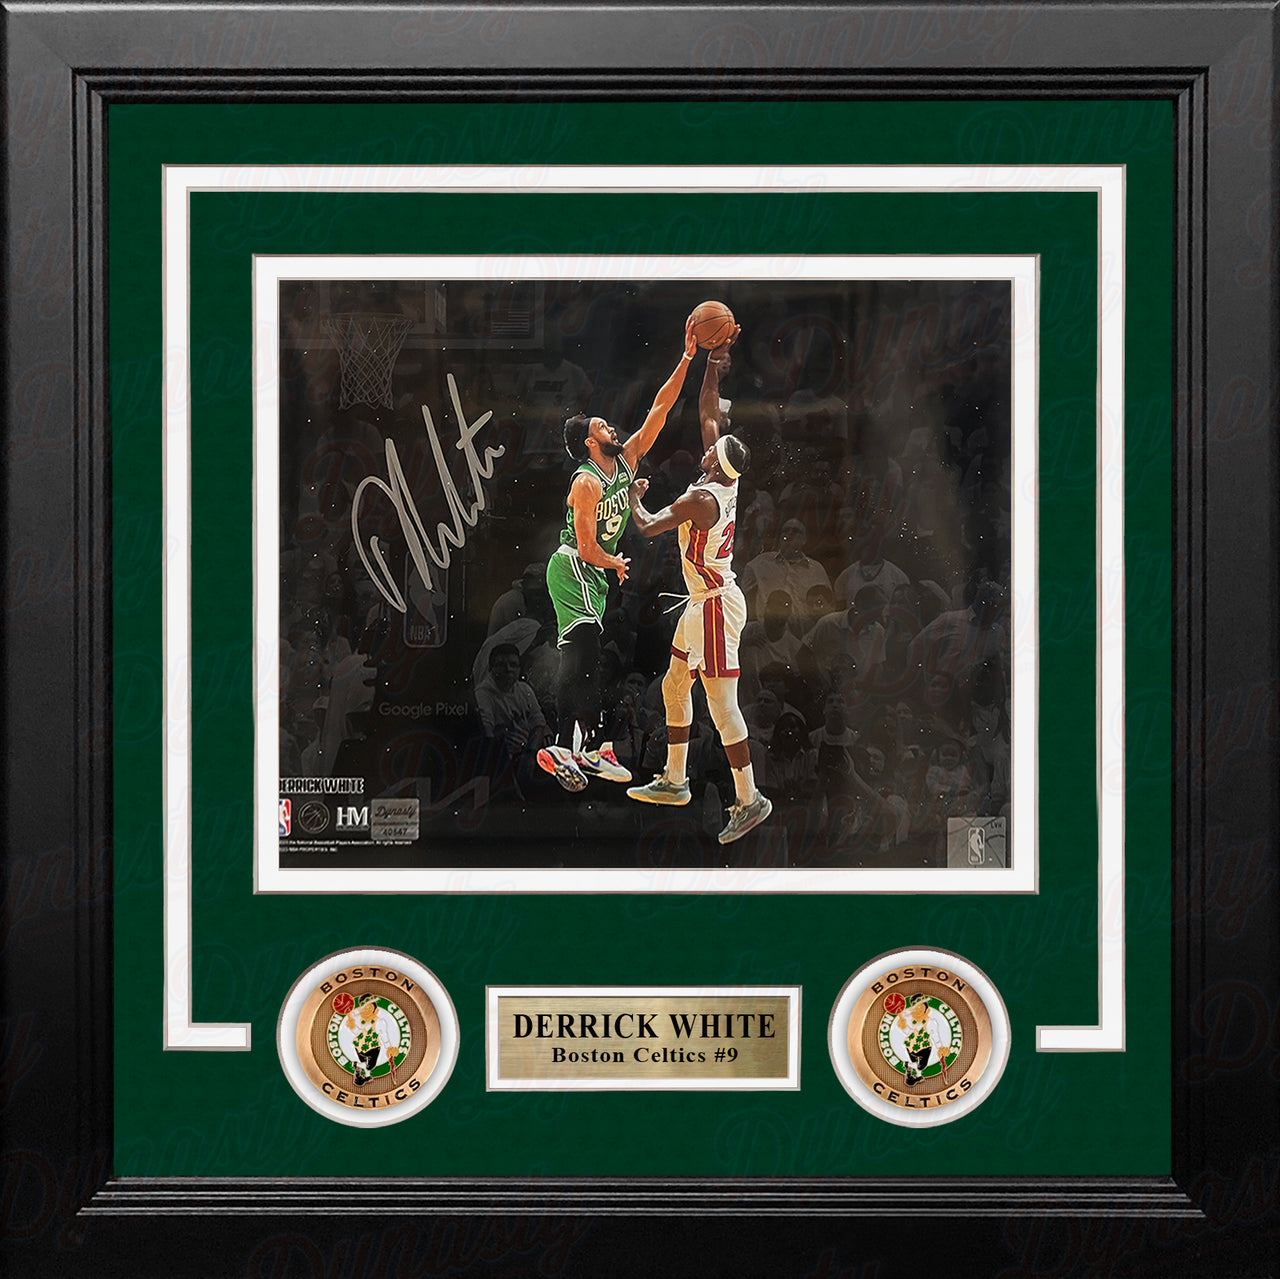 Derrick White v. Butler Boston Celtics Autographed 8" x 10" Framed Basketball Photo